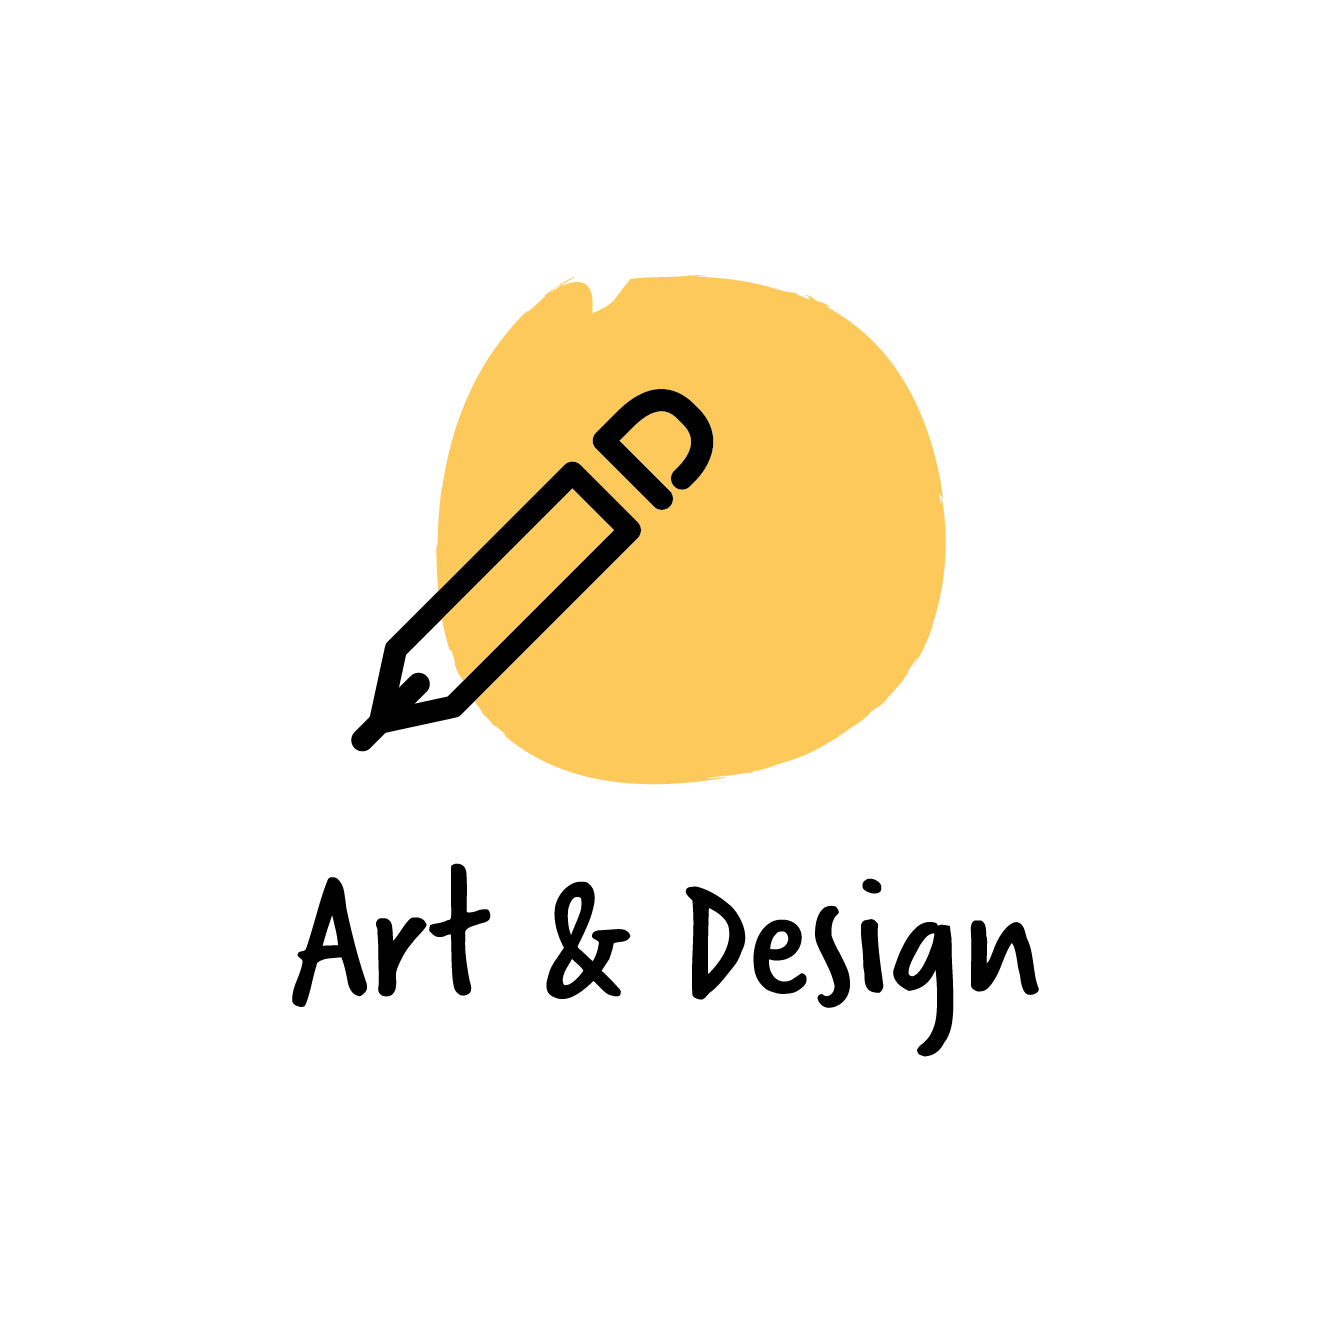 Art & Design_large.png